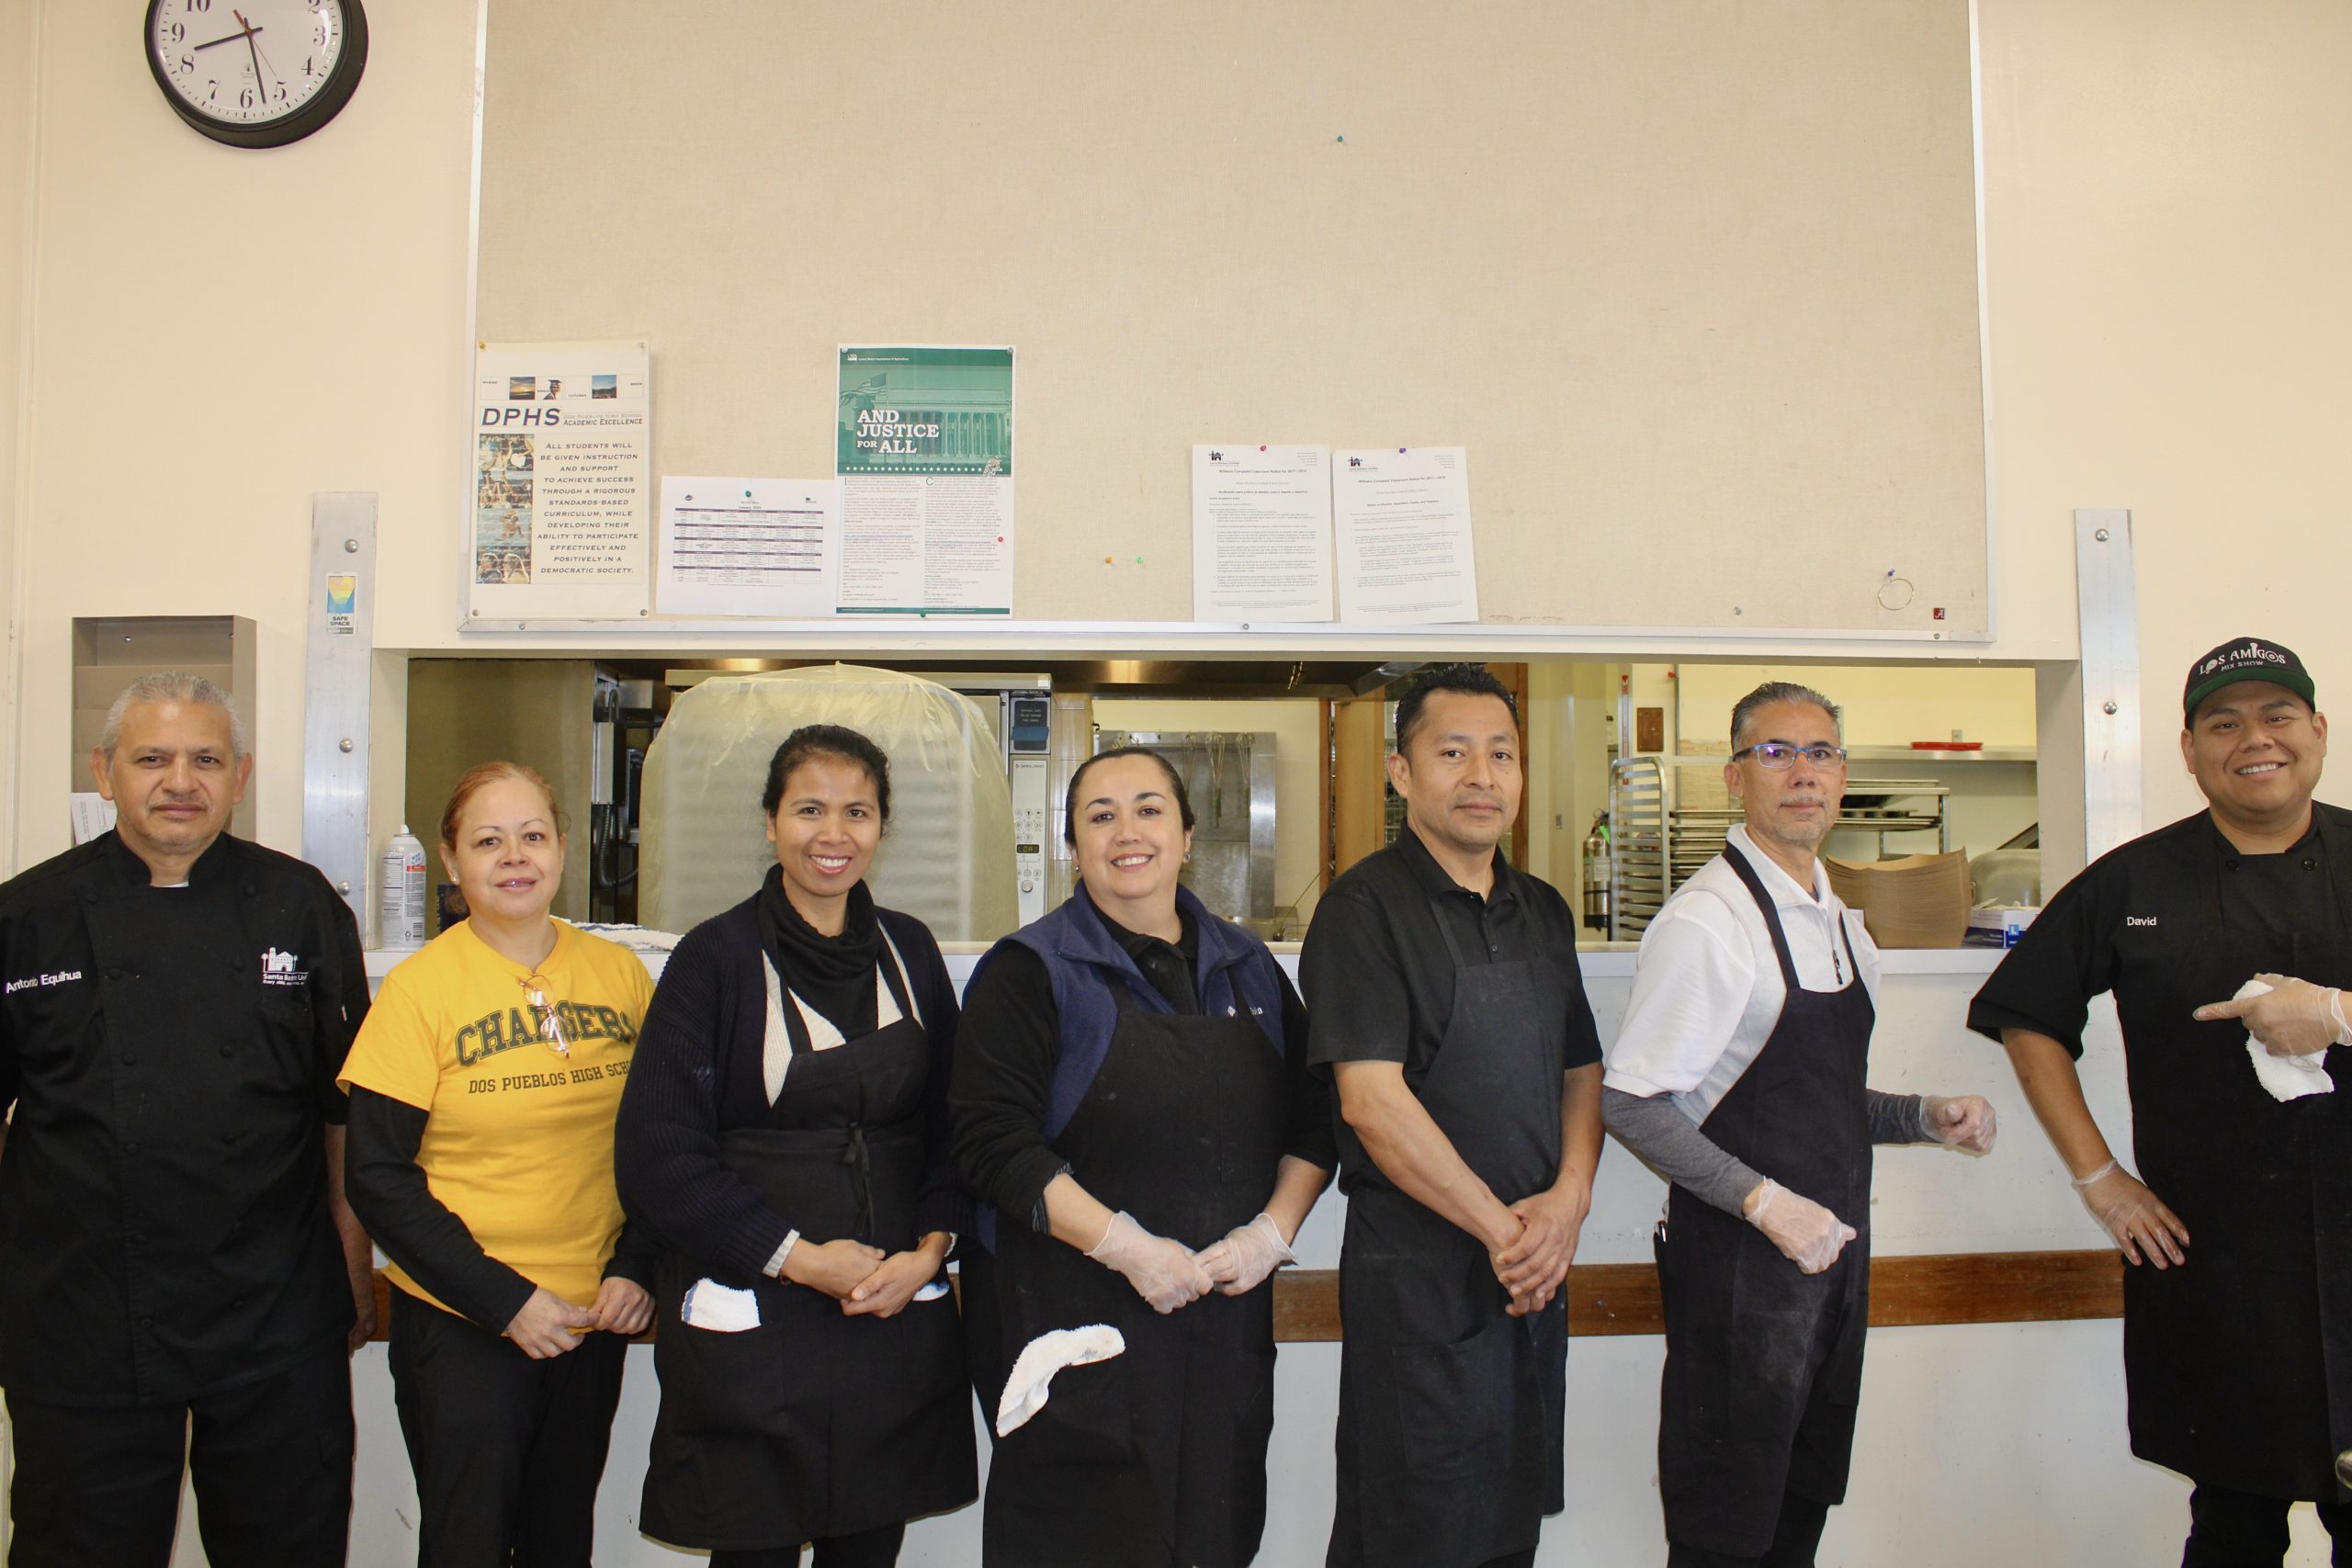 Cafeteria staff
Left to right- Antonio Equihua, Marcela Ramirez, Niluh Buyank, Norma Ramos, Elder Delaluz, Lucio Morales, David Godinez